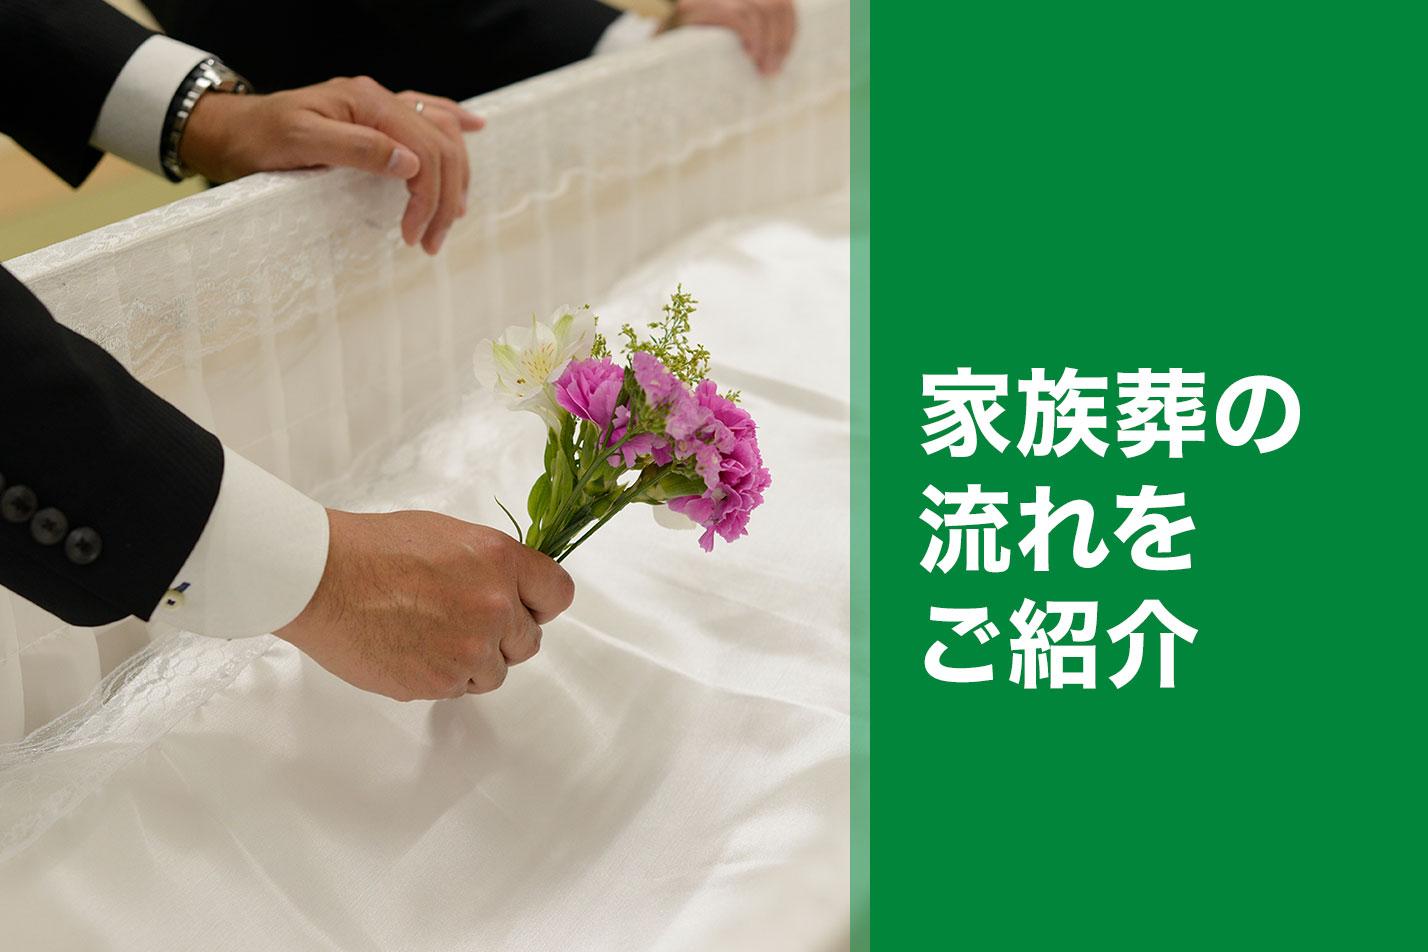  東大和市における家族葬の流れとは？のイメージ画像